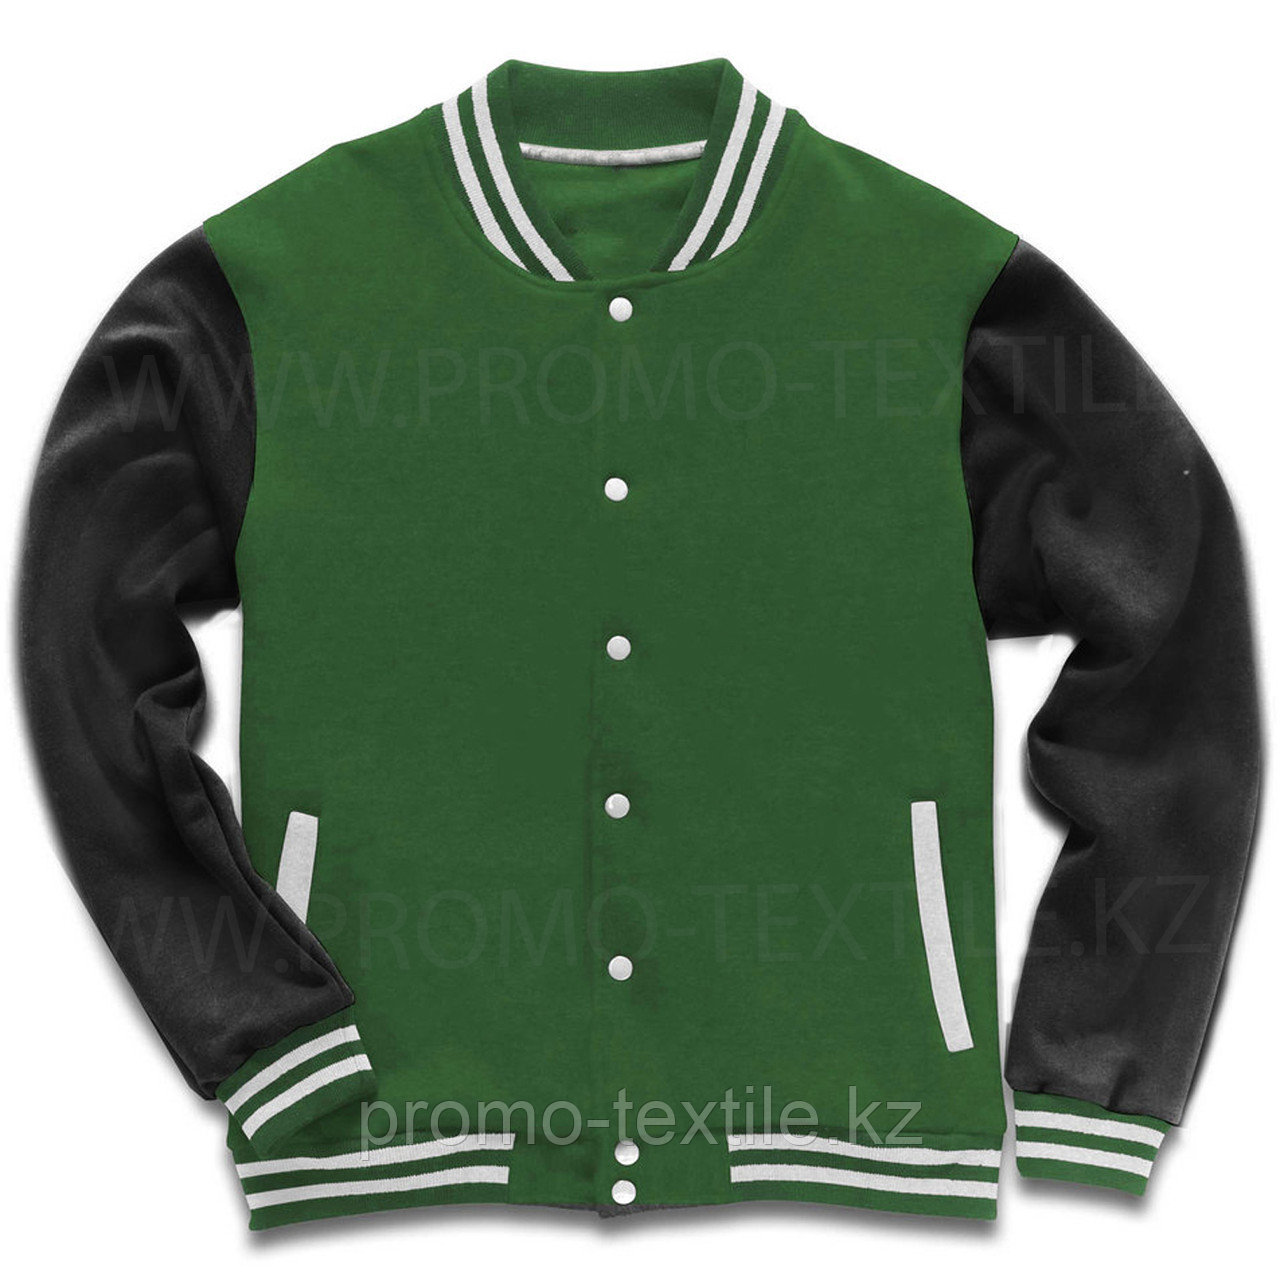 Бомбер куртка зеленого цвета / Толстовка бомбер зеленый